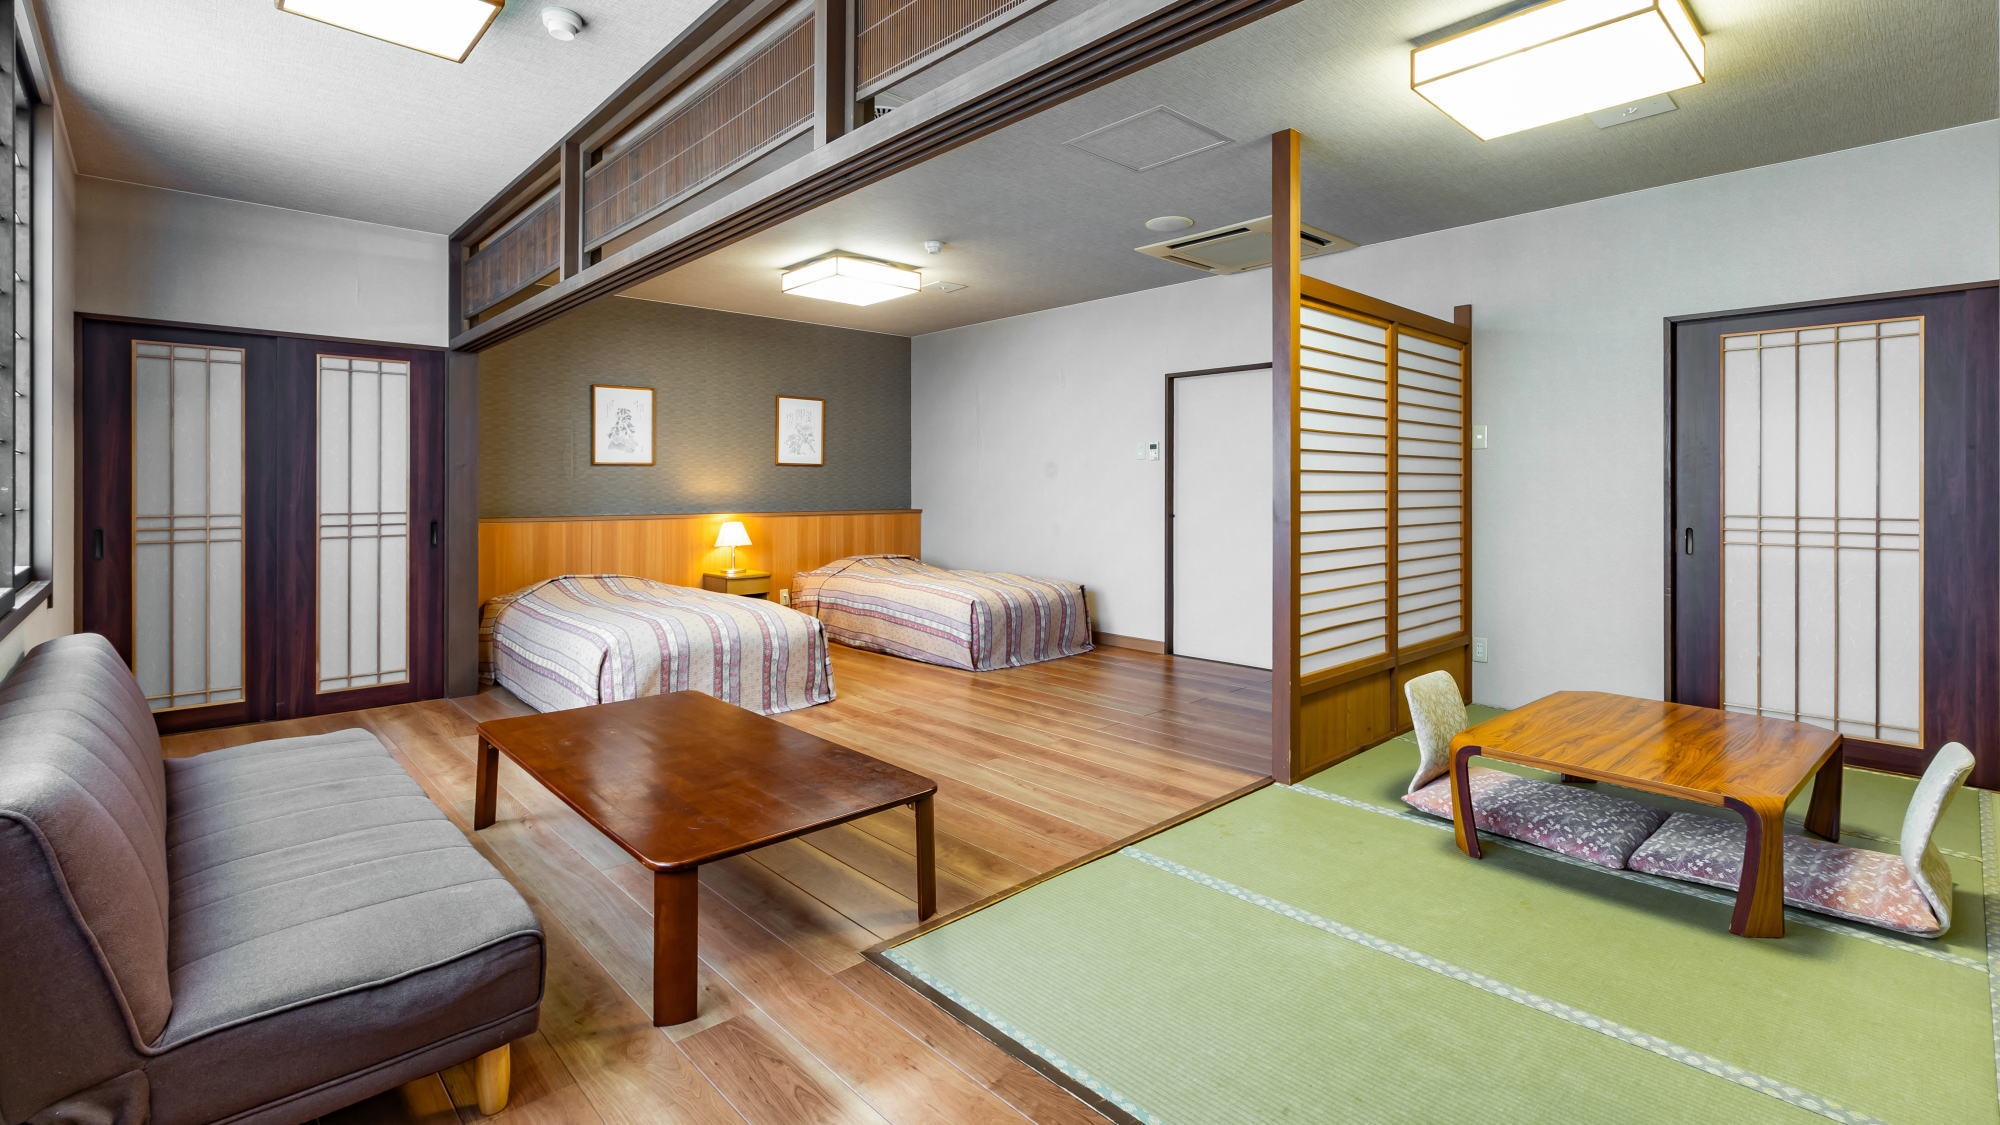 【동관 화양실】트윈 침대가 있는 플로어링과 일본식 객실 8 다다미를 조합한 객실입니다.